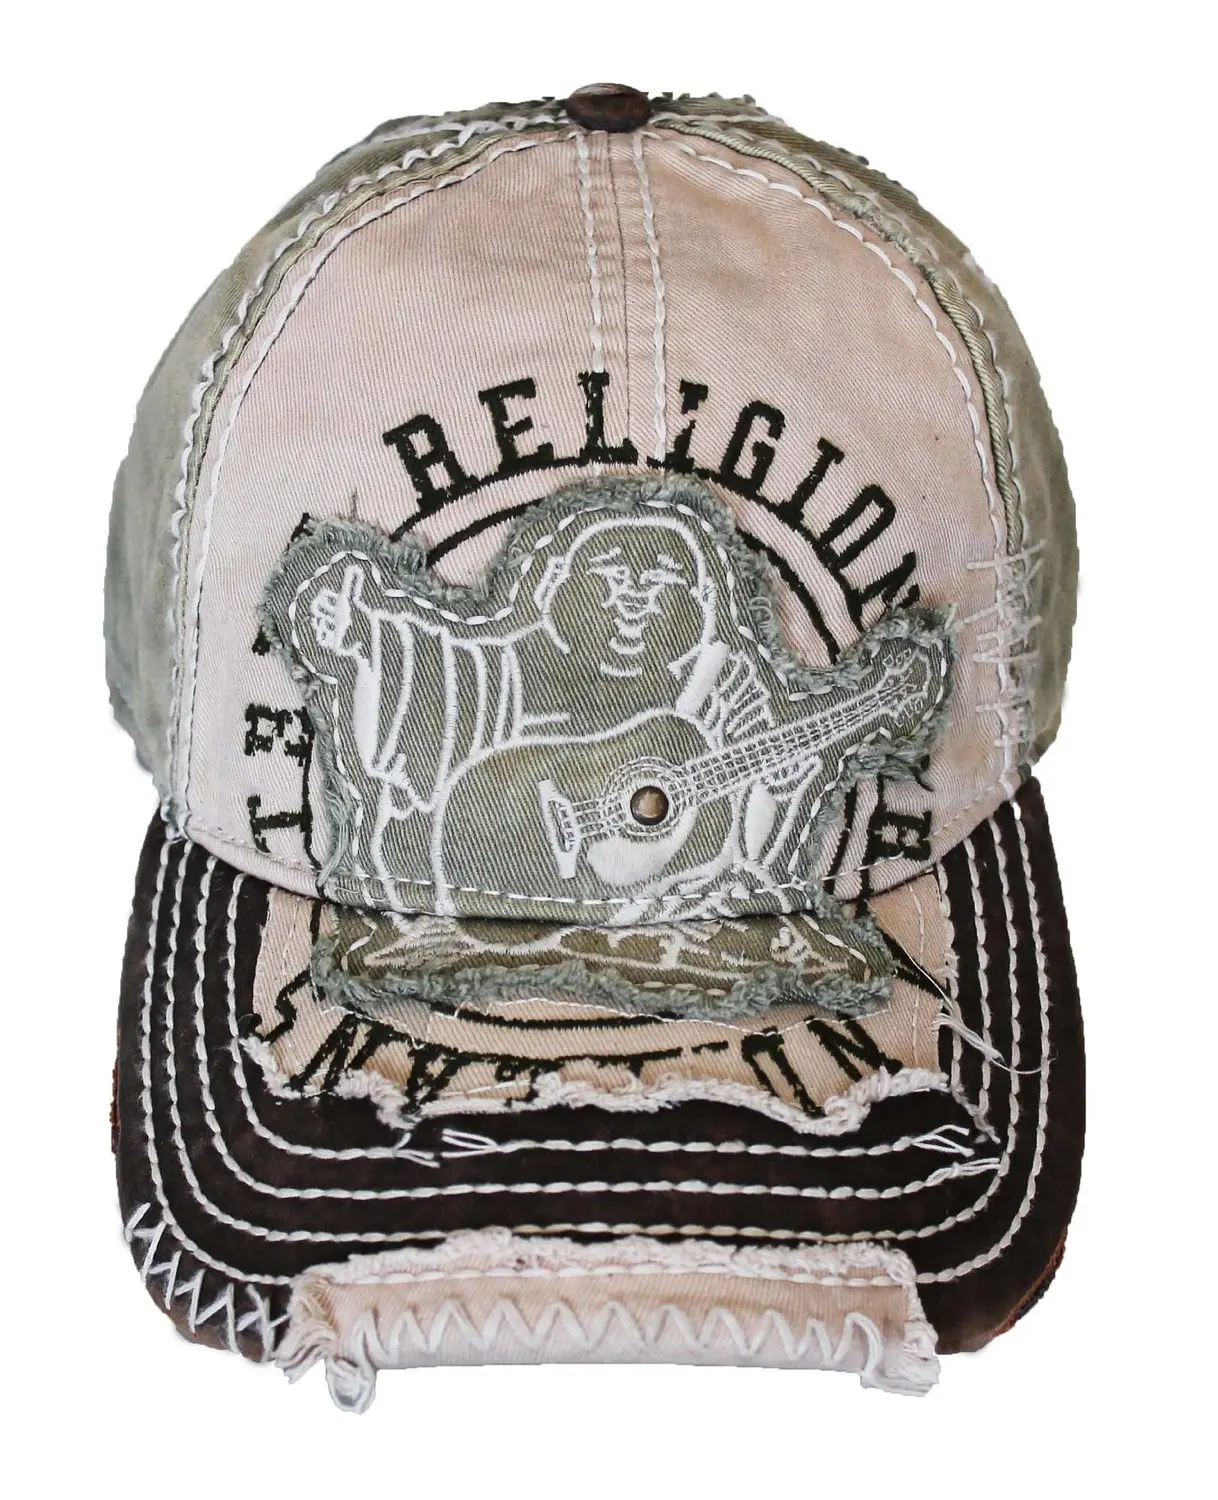 true religion trucker hat